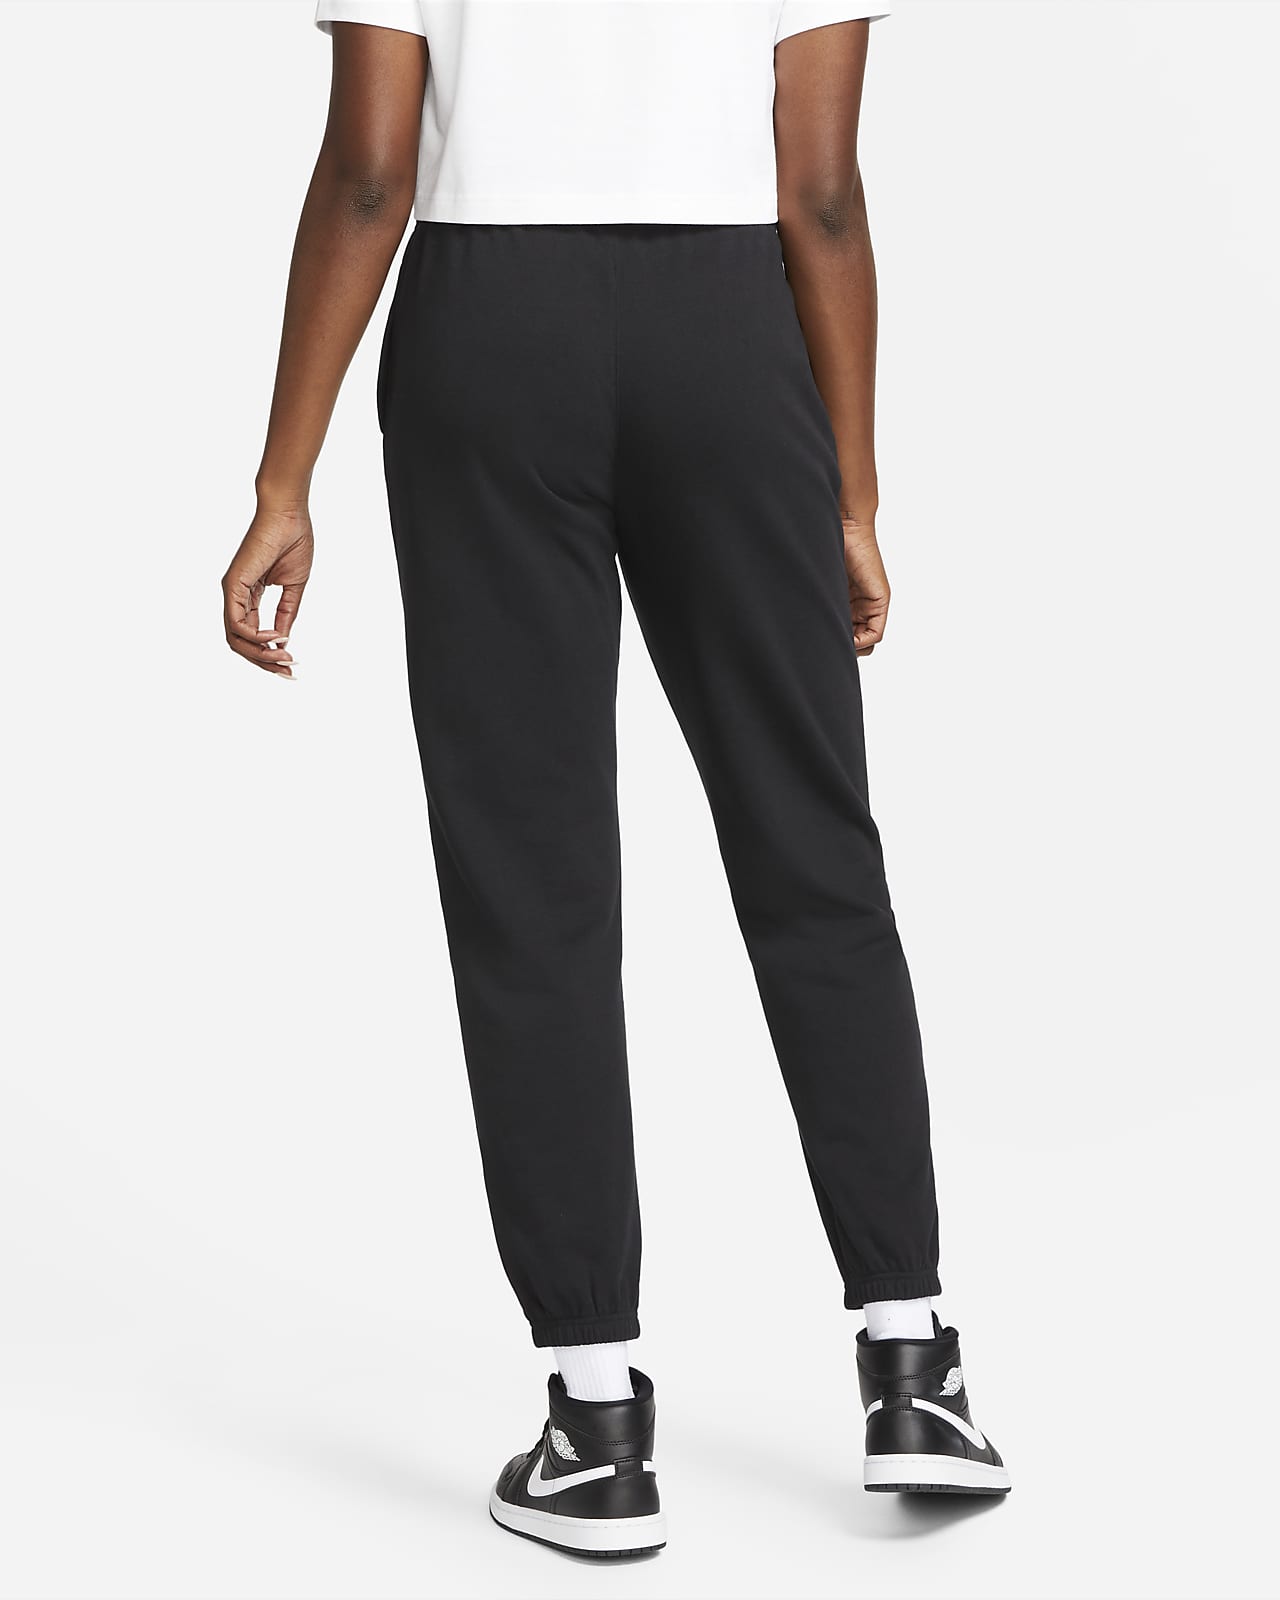  Jordan Women's Grey Essentials Fleece Pants - XS